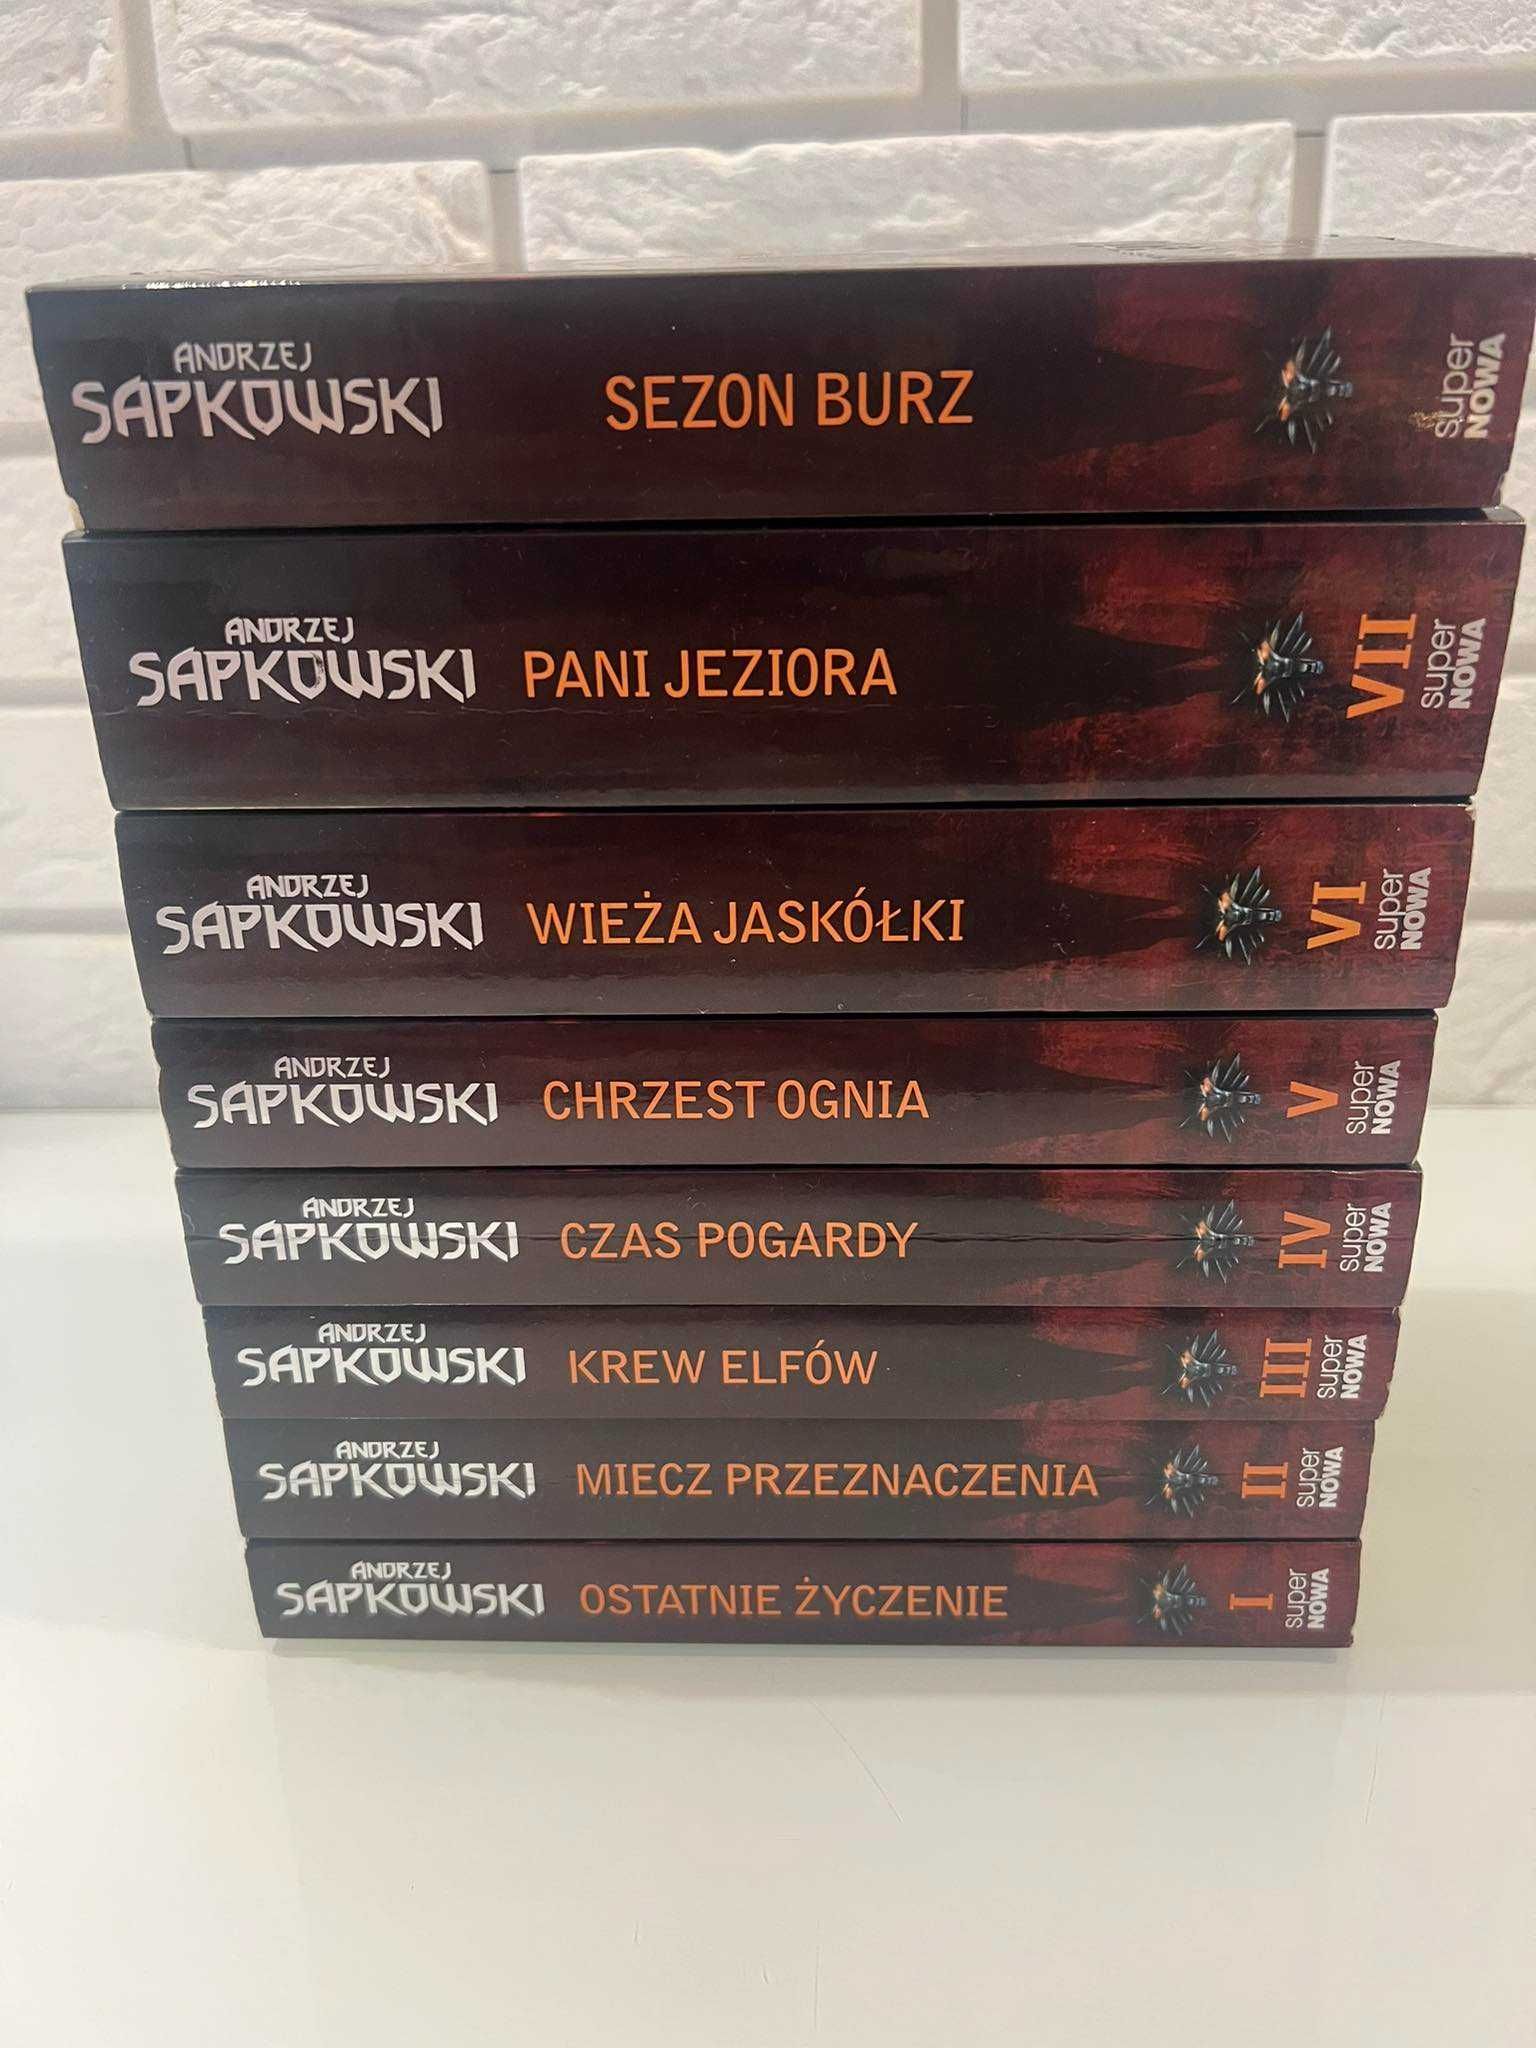 "Wiedźmin" tomy 1-7 plus 8 Sezon Burz - Sapkowski, Super nowa